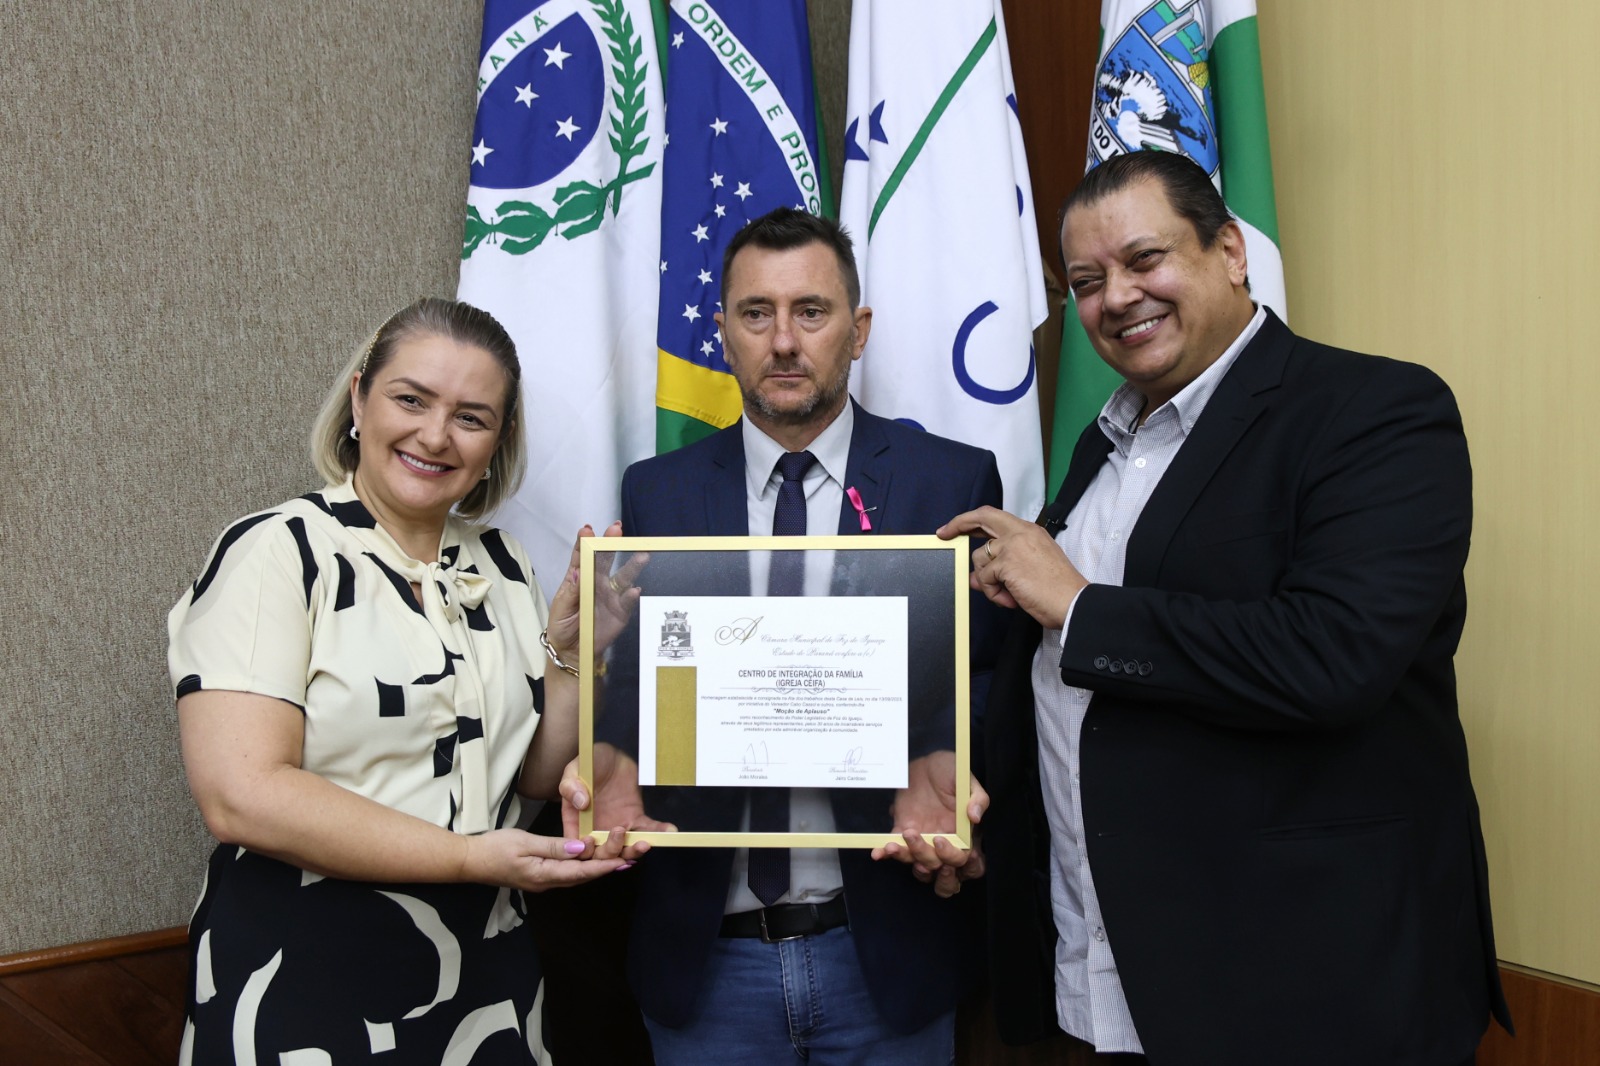 Igreja CEIFA de Foz do Iguaçu é homenageada pela Câmara de Vereadores